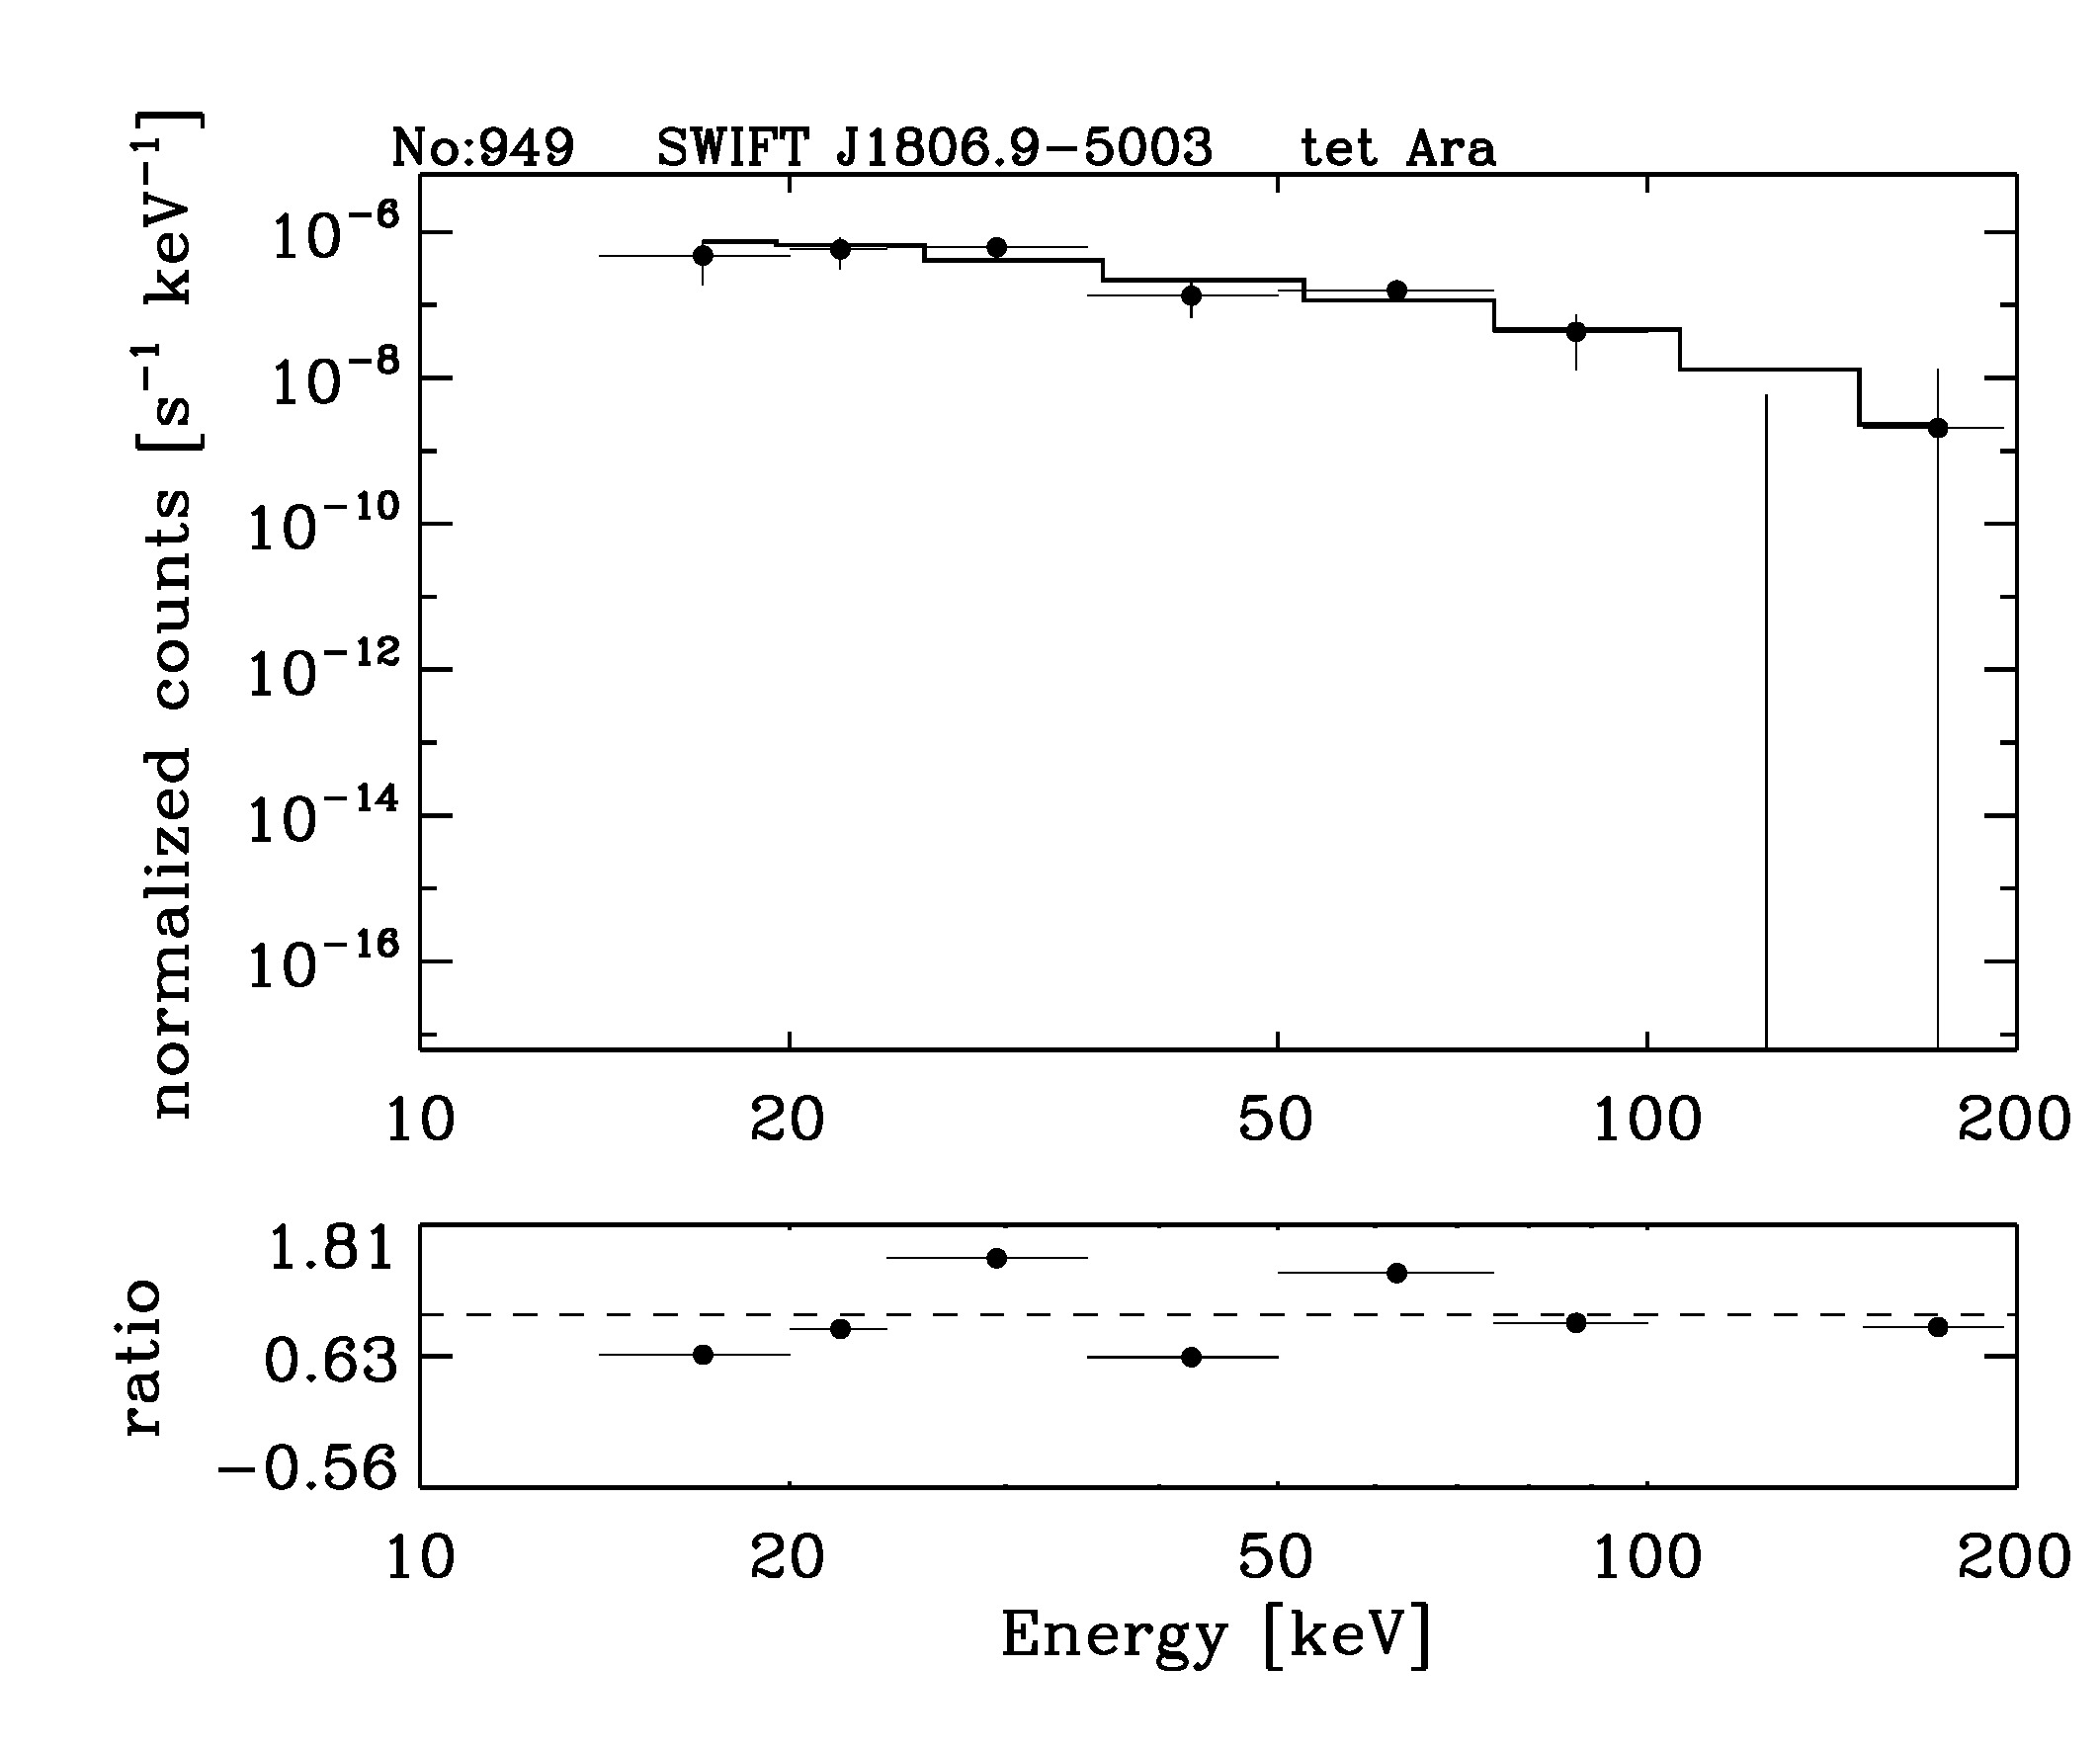 BAT Spectrum for SWIFT J1806.9-5003